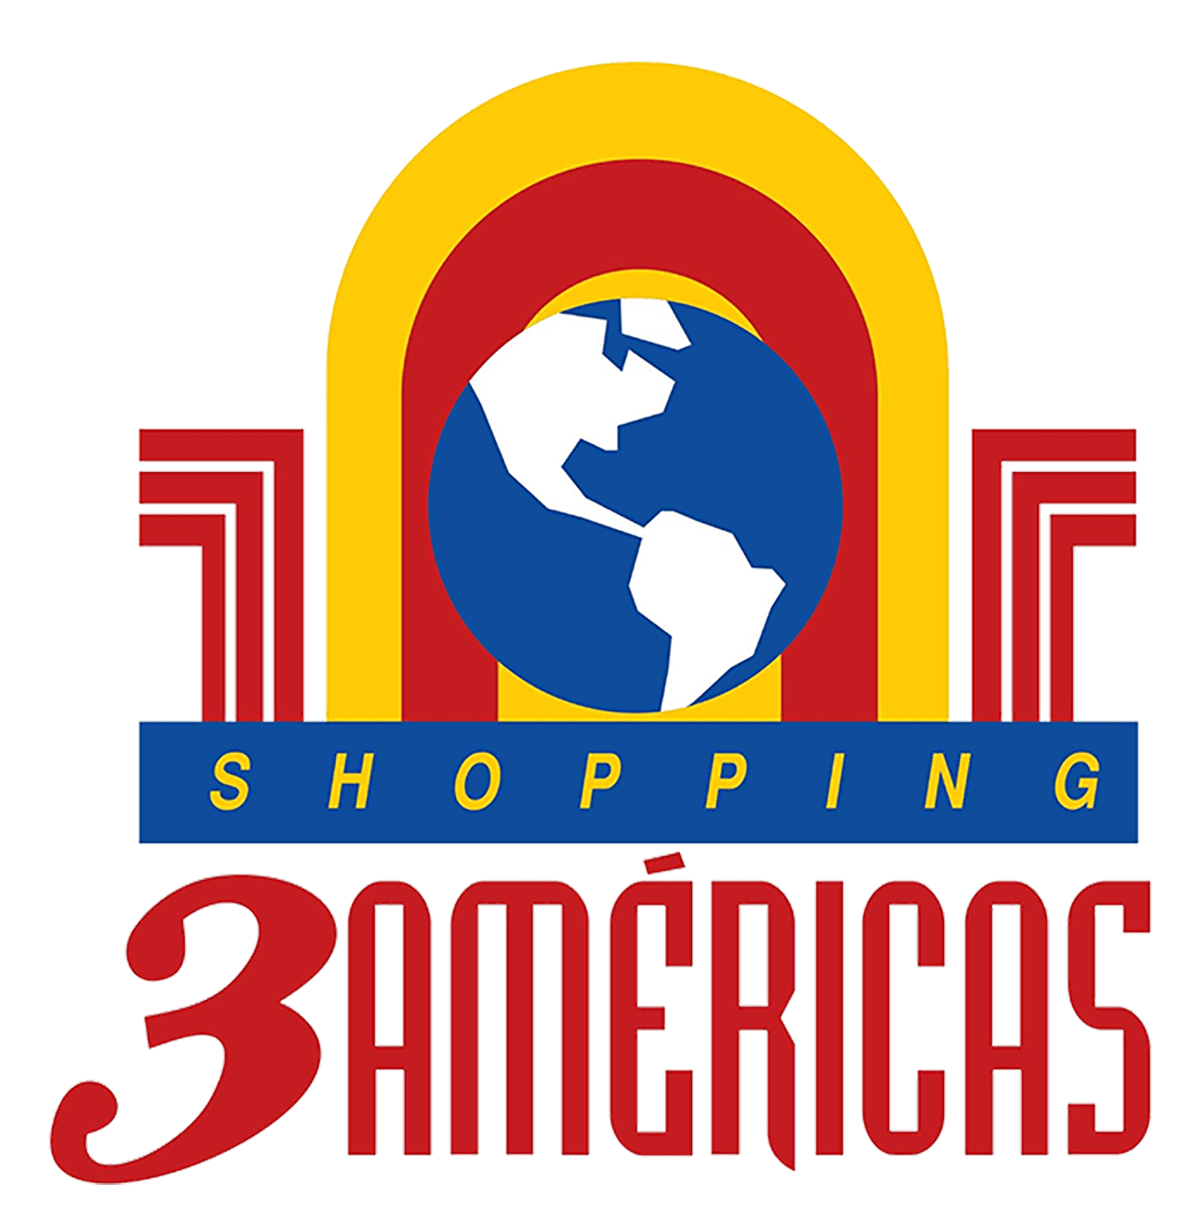 Elementos - Cinema - Shopping Jardim das Américas